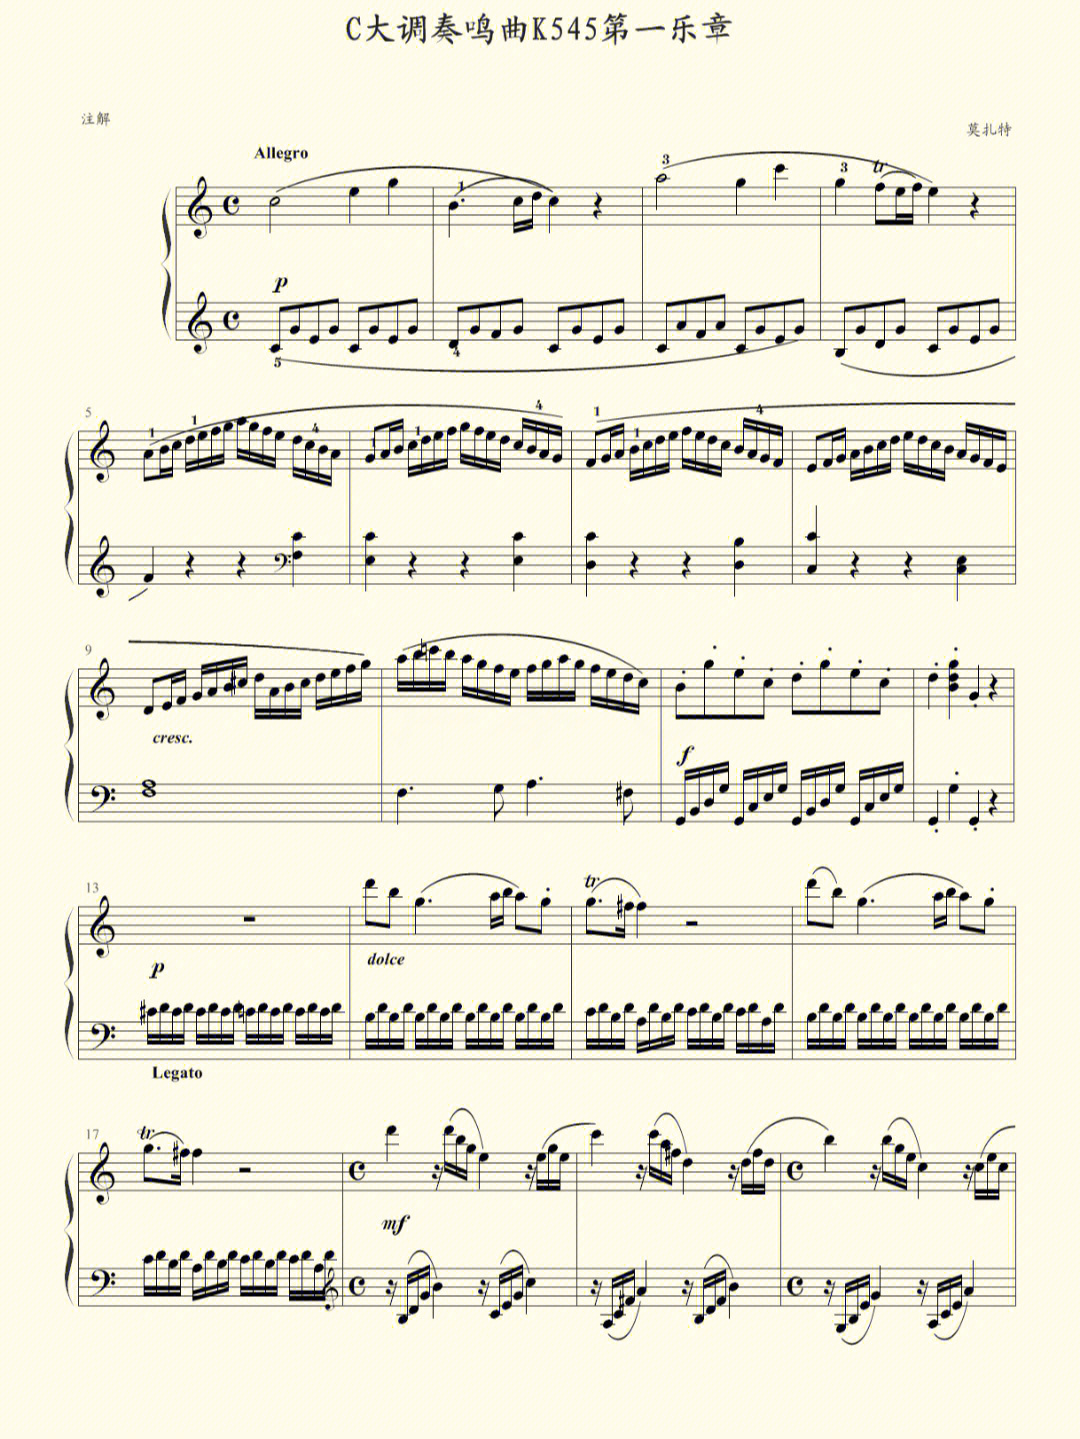 莫扎特545奏鸣曲钢琴曲谱子高清原版第一乐